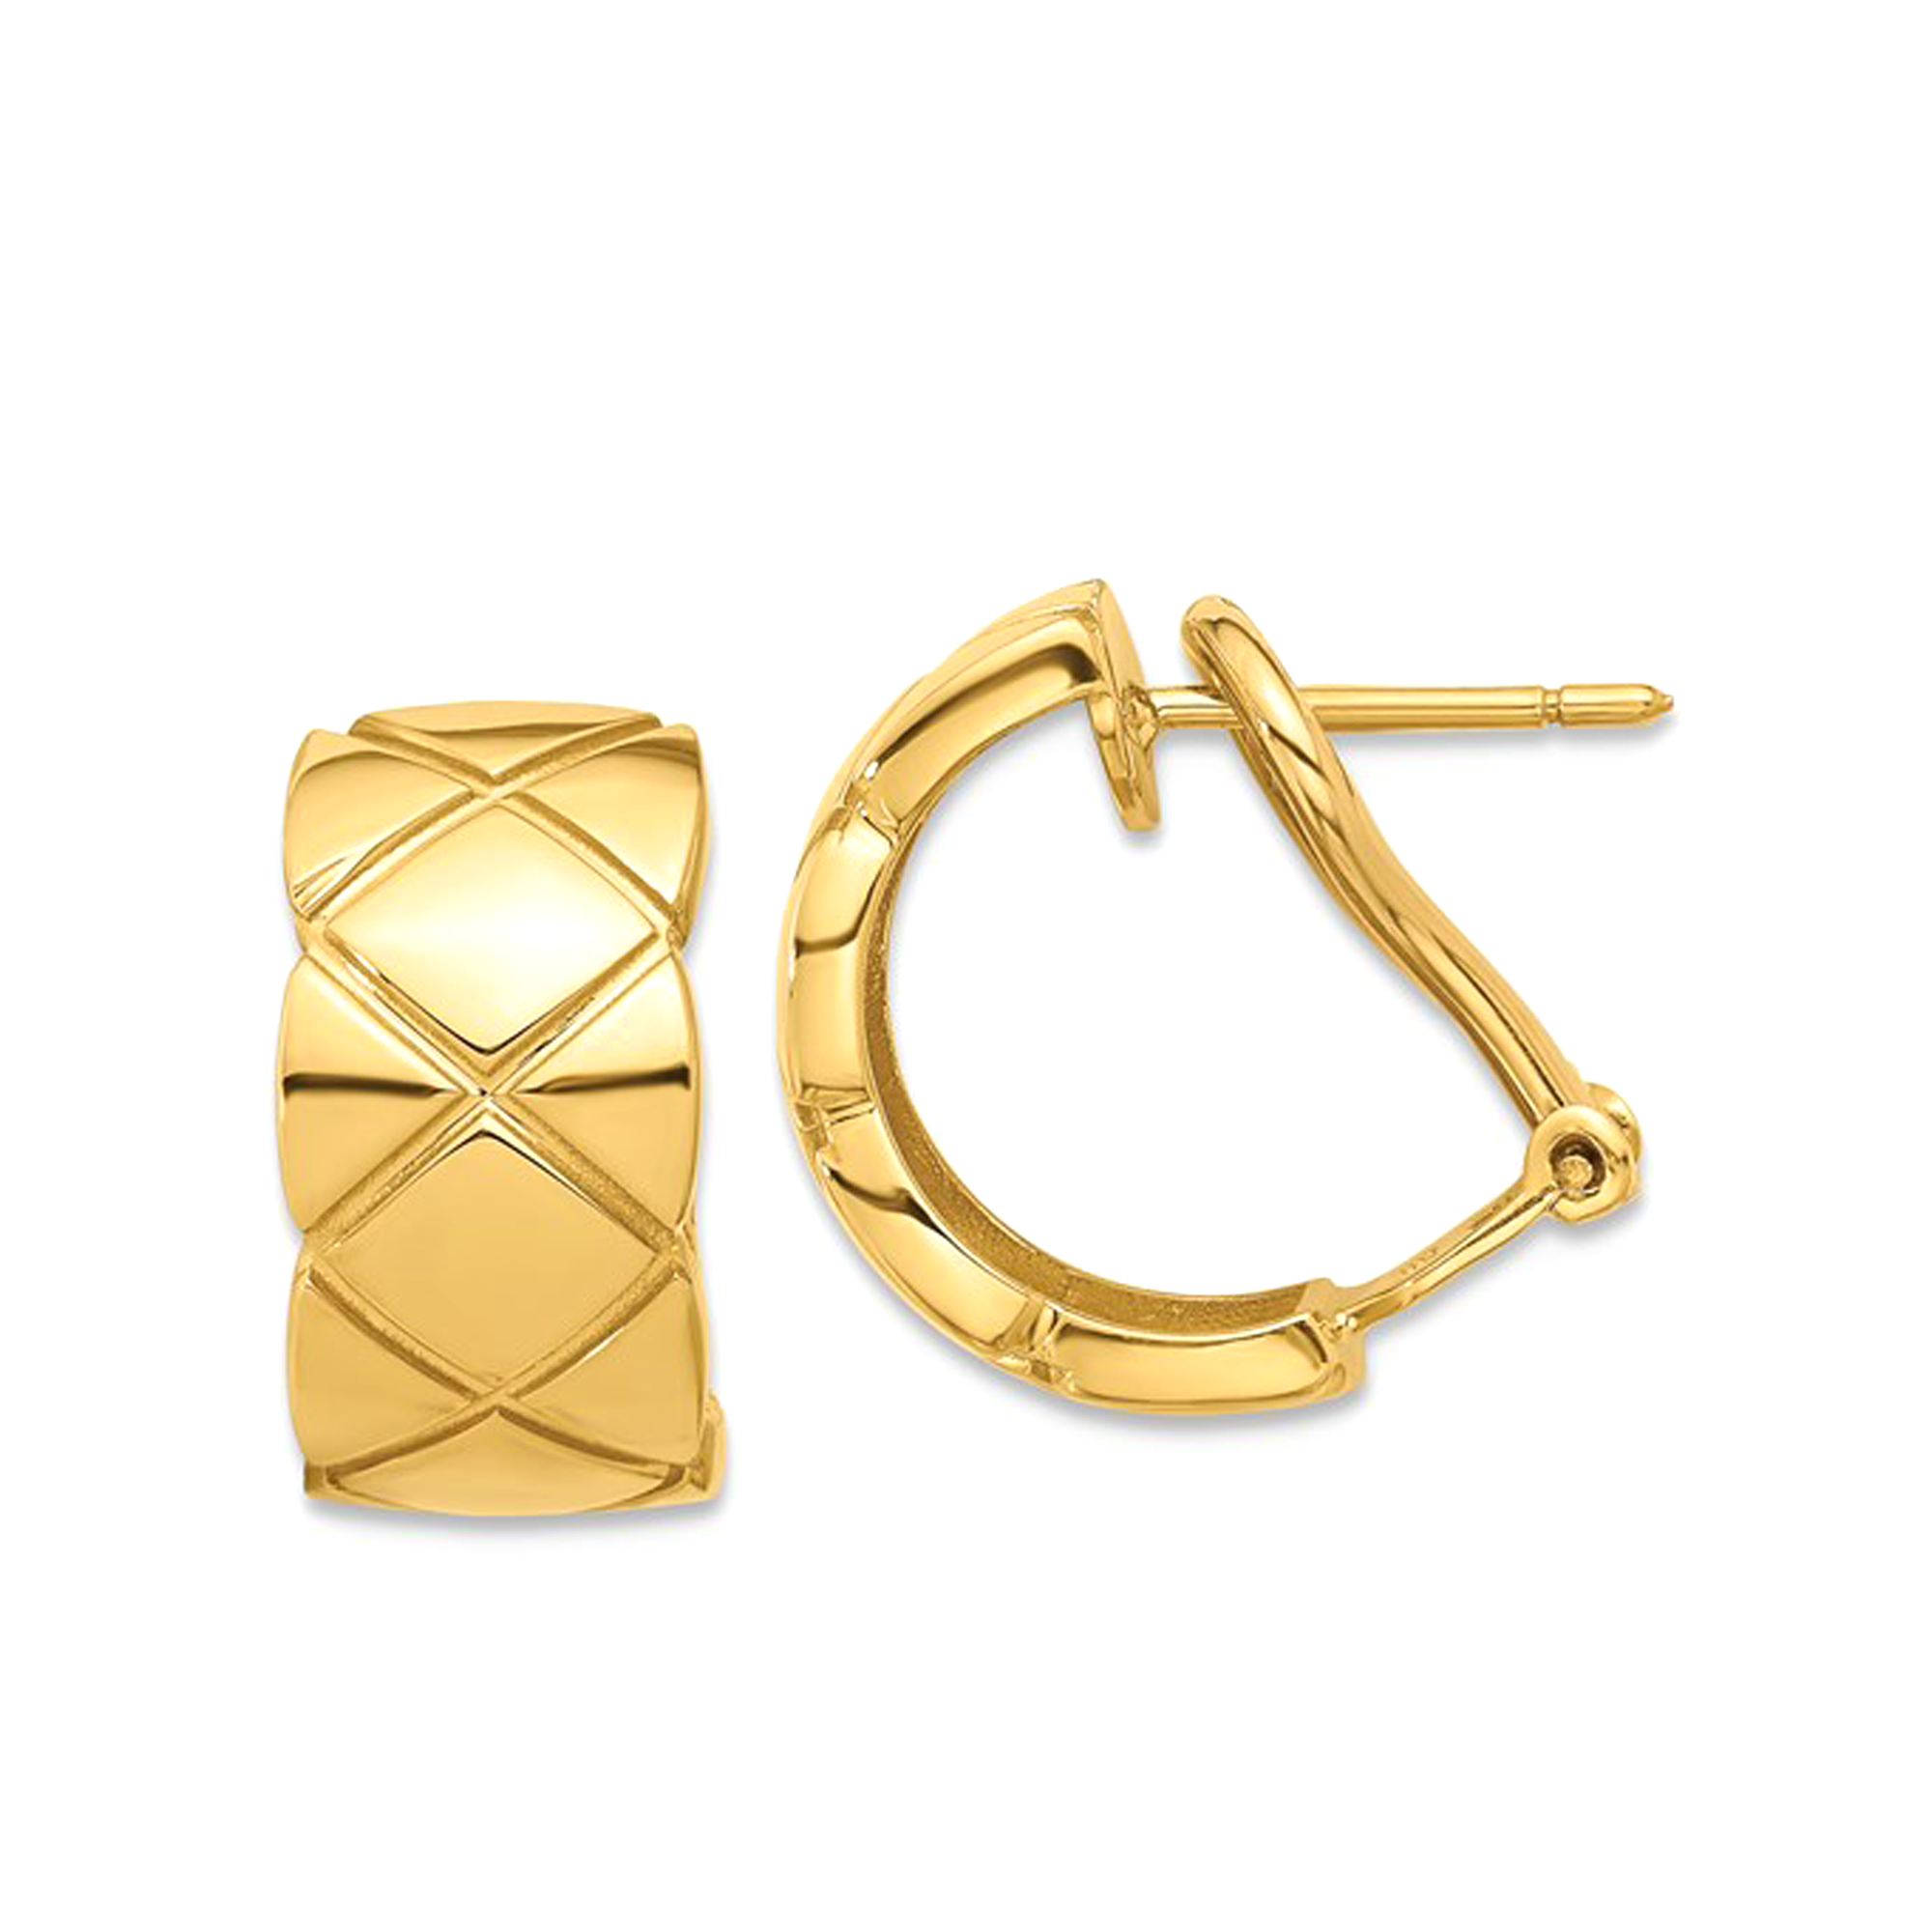 18K Real Yellow Gold Criss Cross Omega Back C-Hoop Earrings, 17mm Diameter fine designer jewelry for men and women